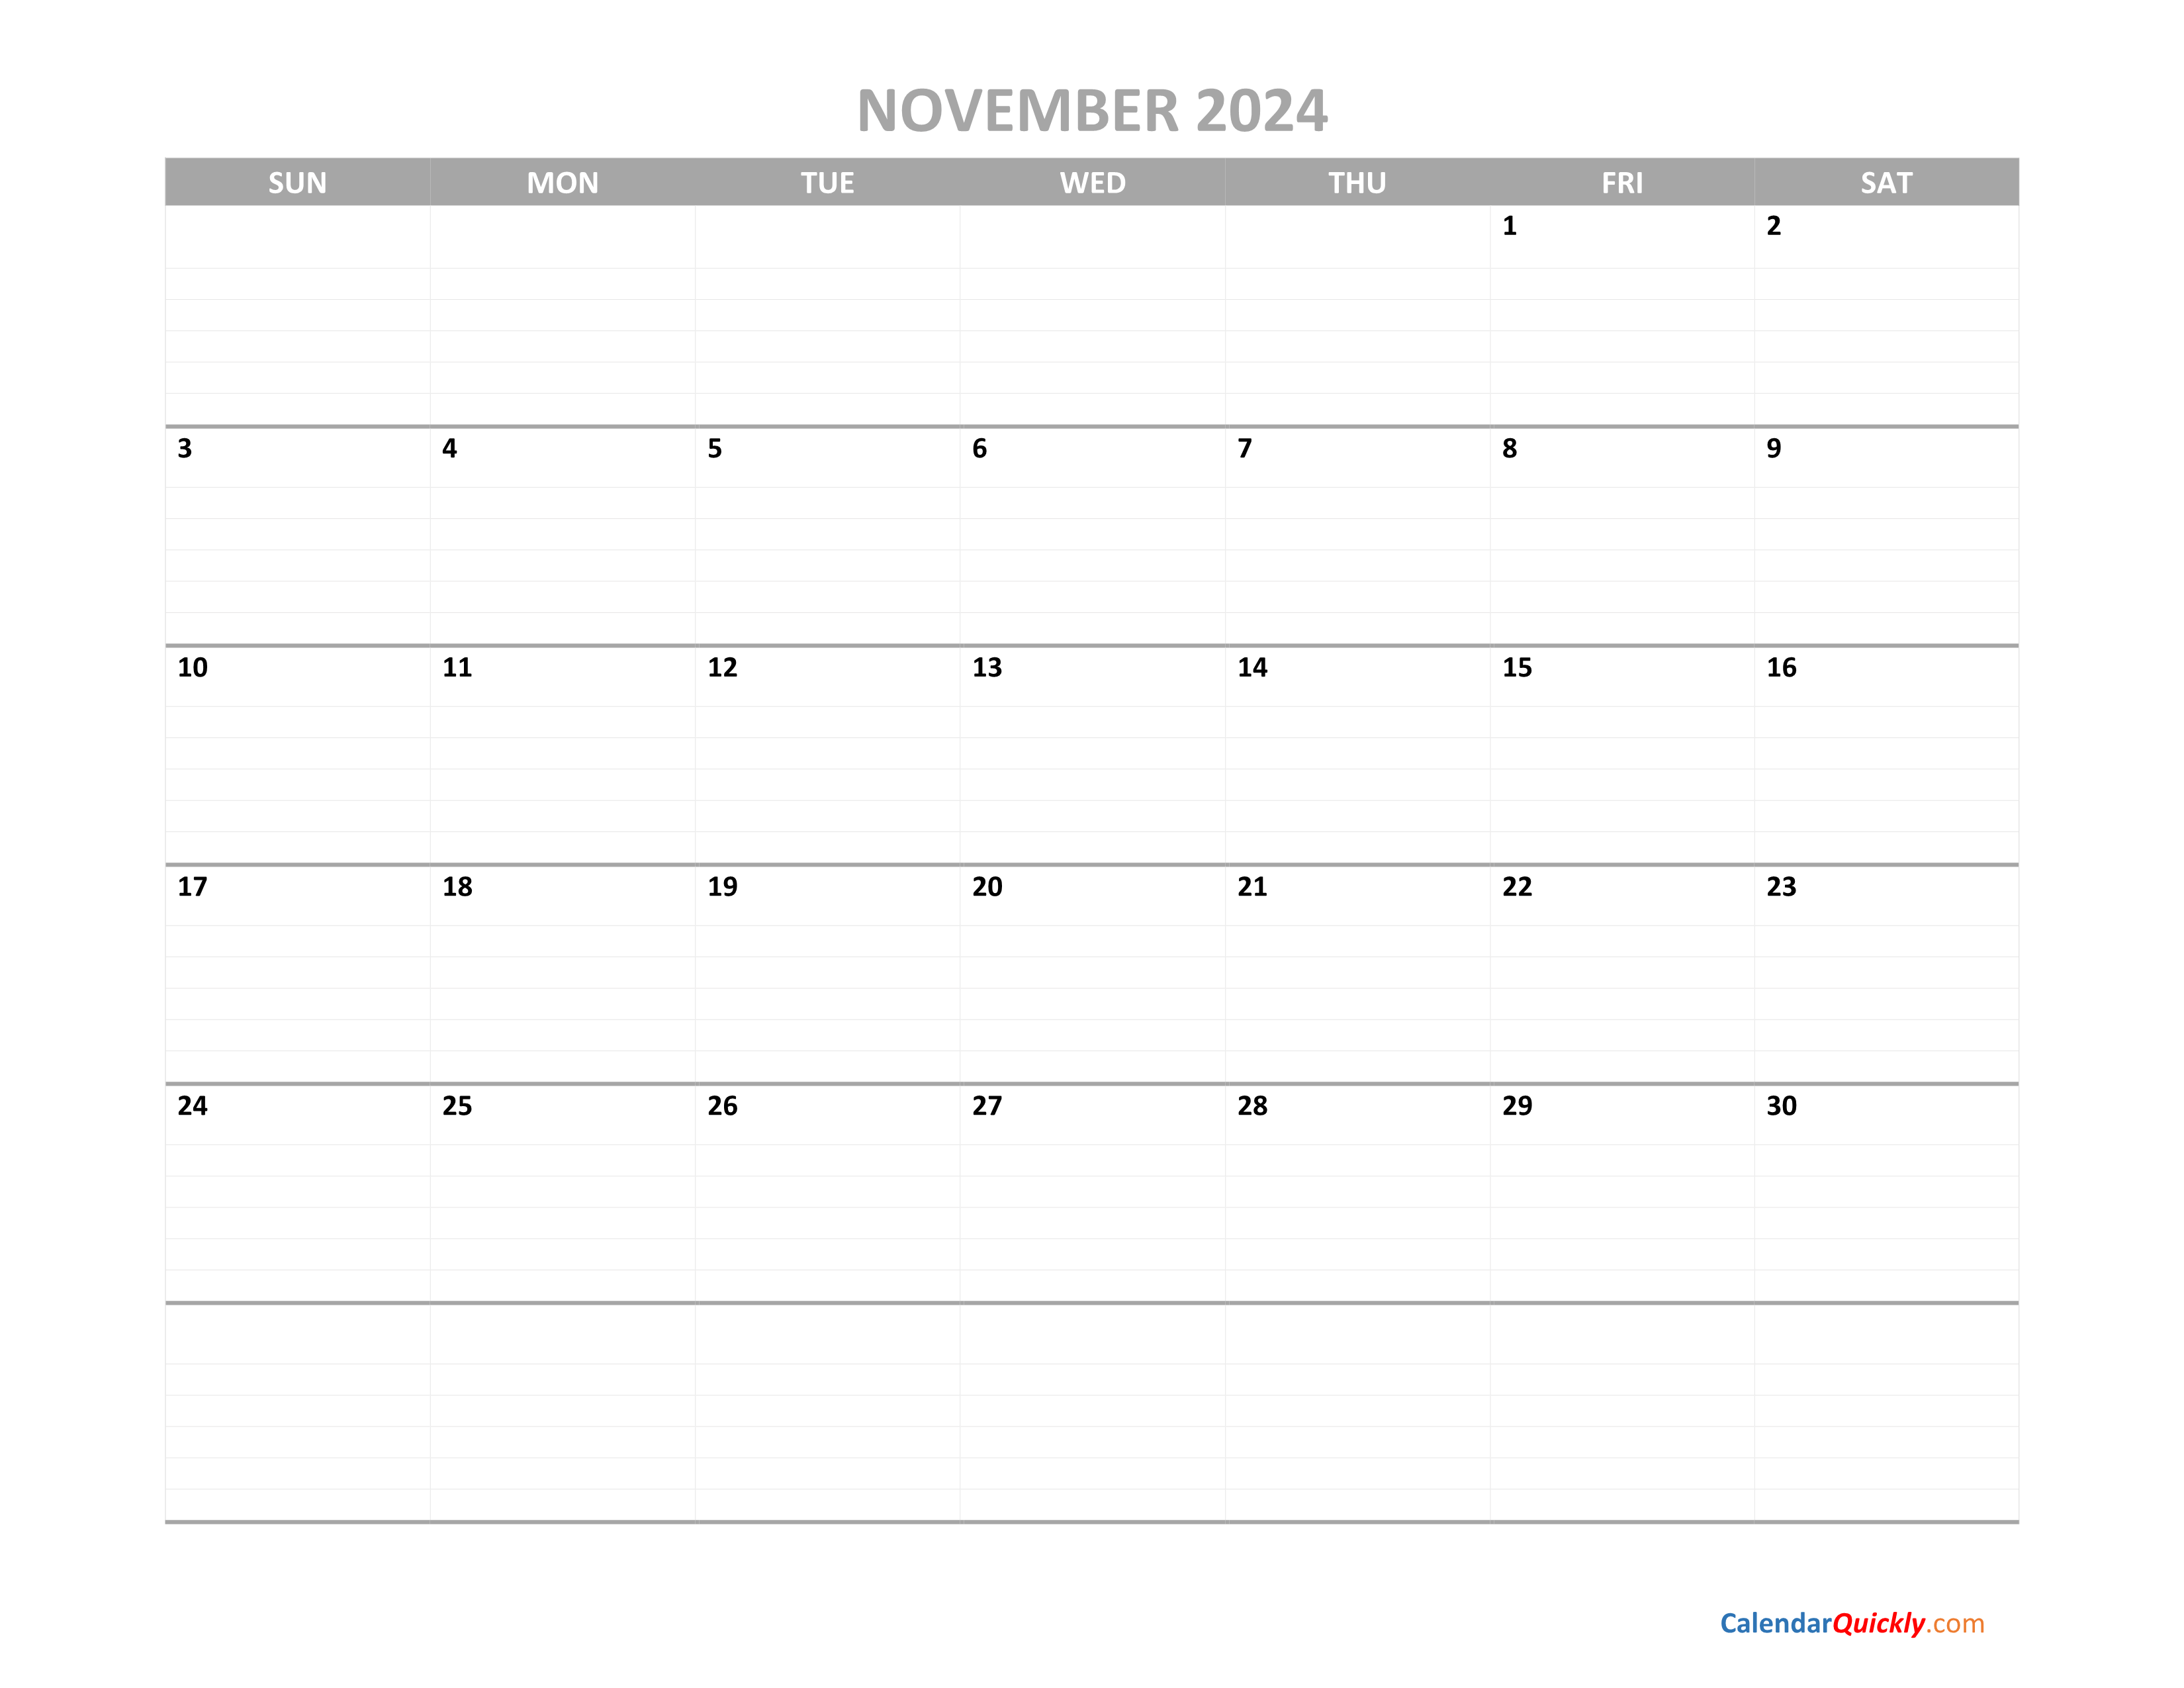 November Calendar 2024 Printable | Calendar Quickly